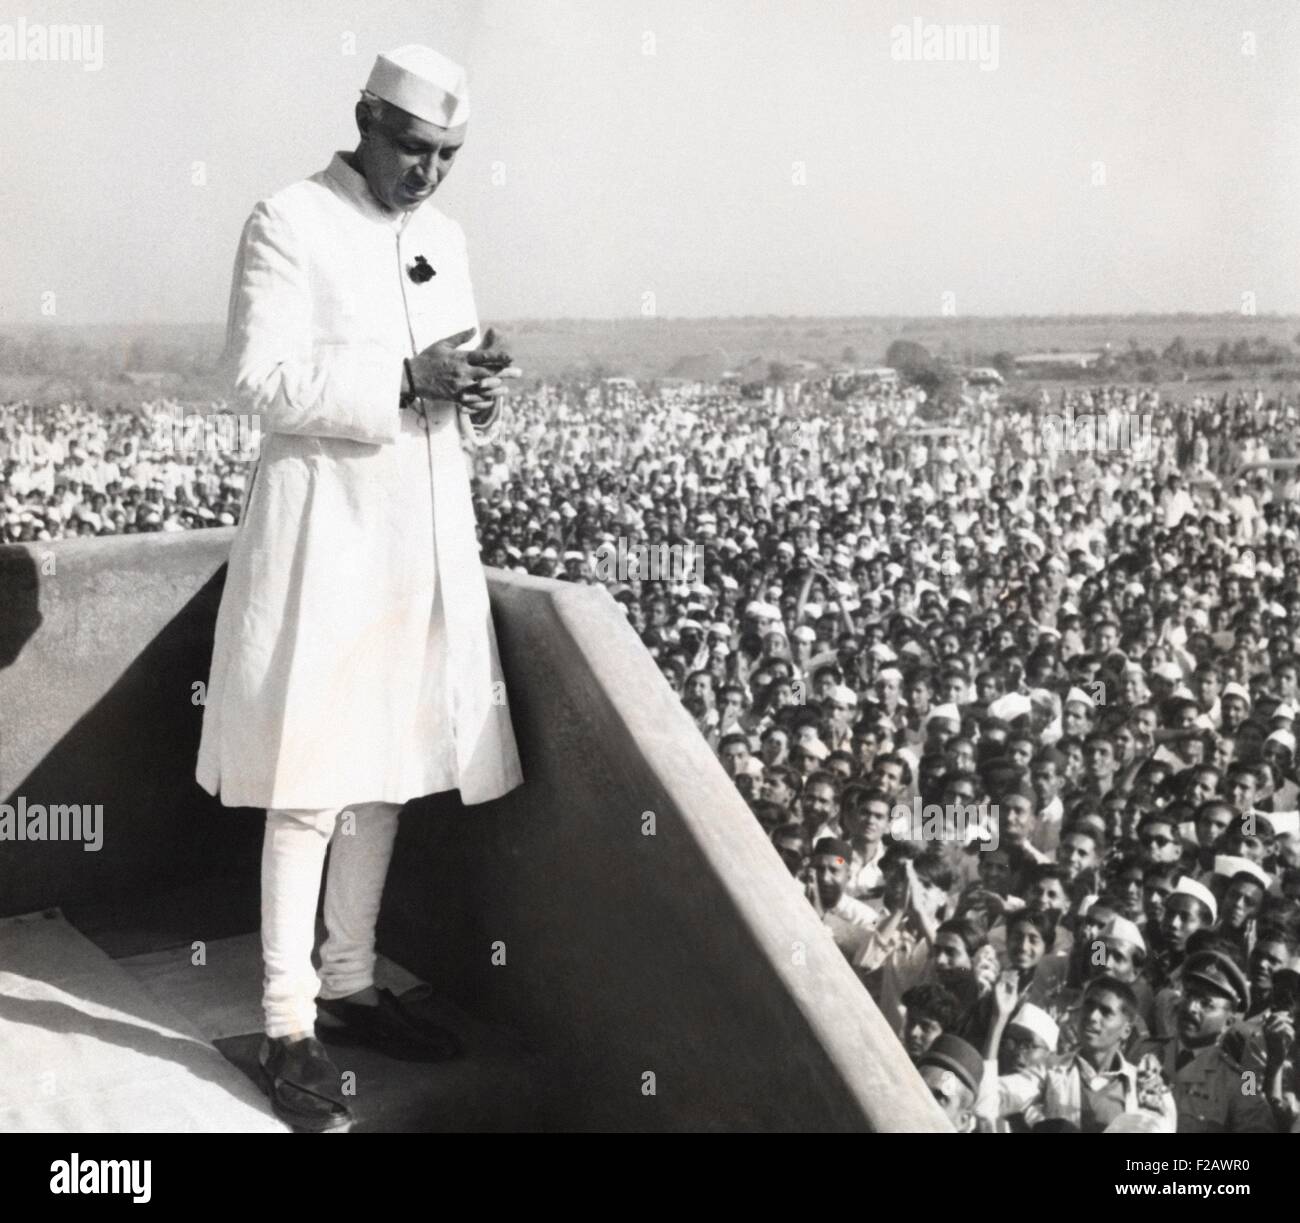 Jawaharlal Nehru, Premierminister von Indien, Adressierung eine Menschenmenge in Parnera, Indien. 23. März 1952. Der Anlass war die Eröffnung einer Fabrik, Farbstoffe und Medikamente in ein gemeinsames Geschäft der indisch-amerikanische Wagen zu machen. (CSU 2015 11 1233) Stockfoto